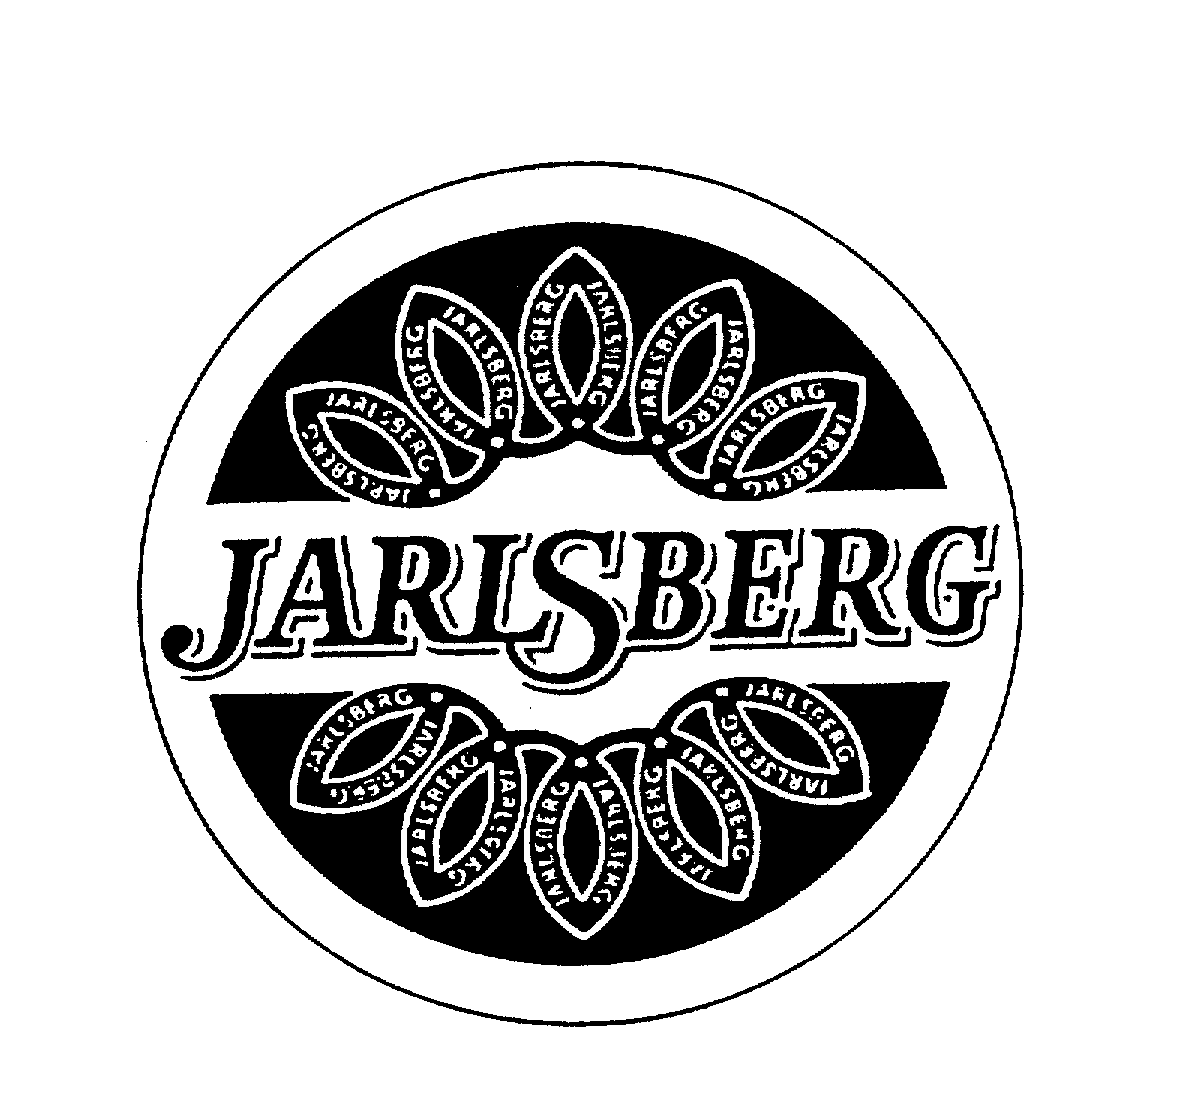  JARLSBERG